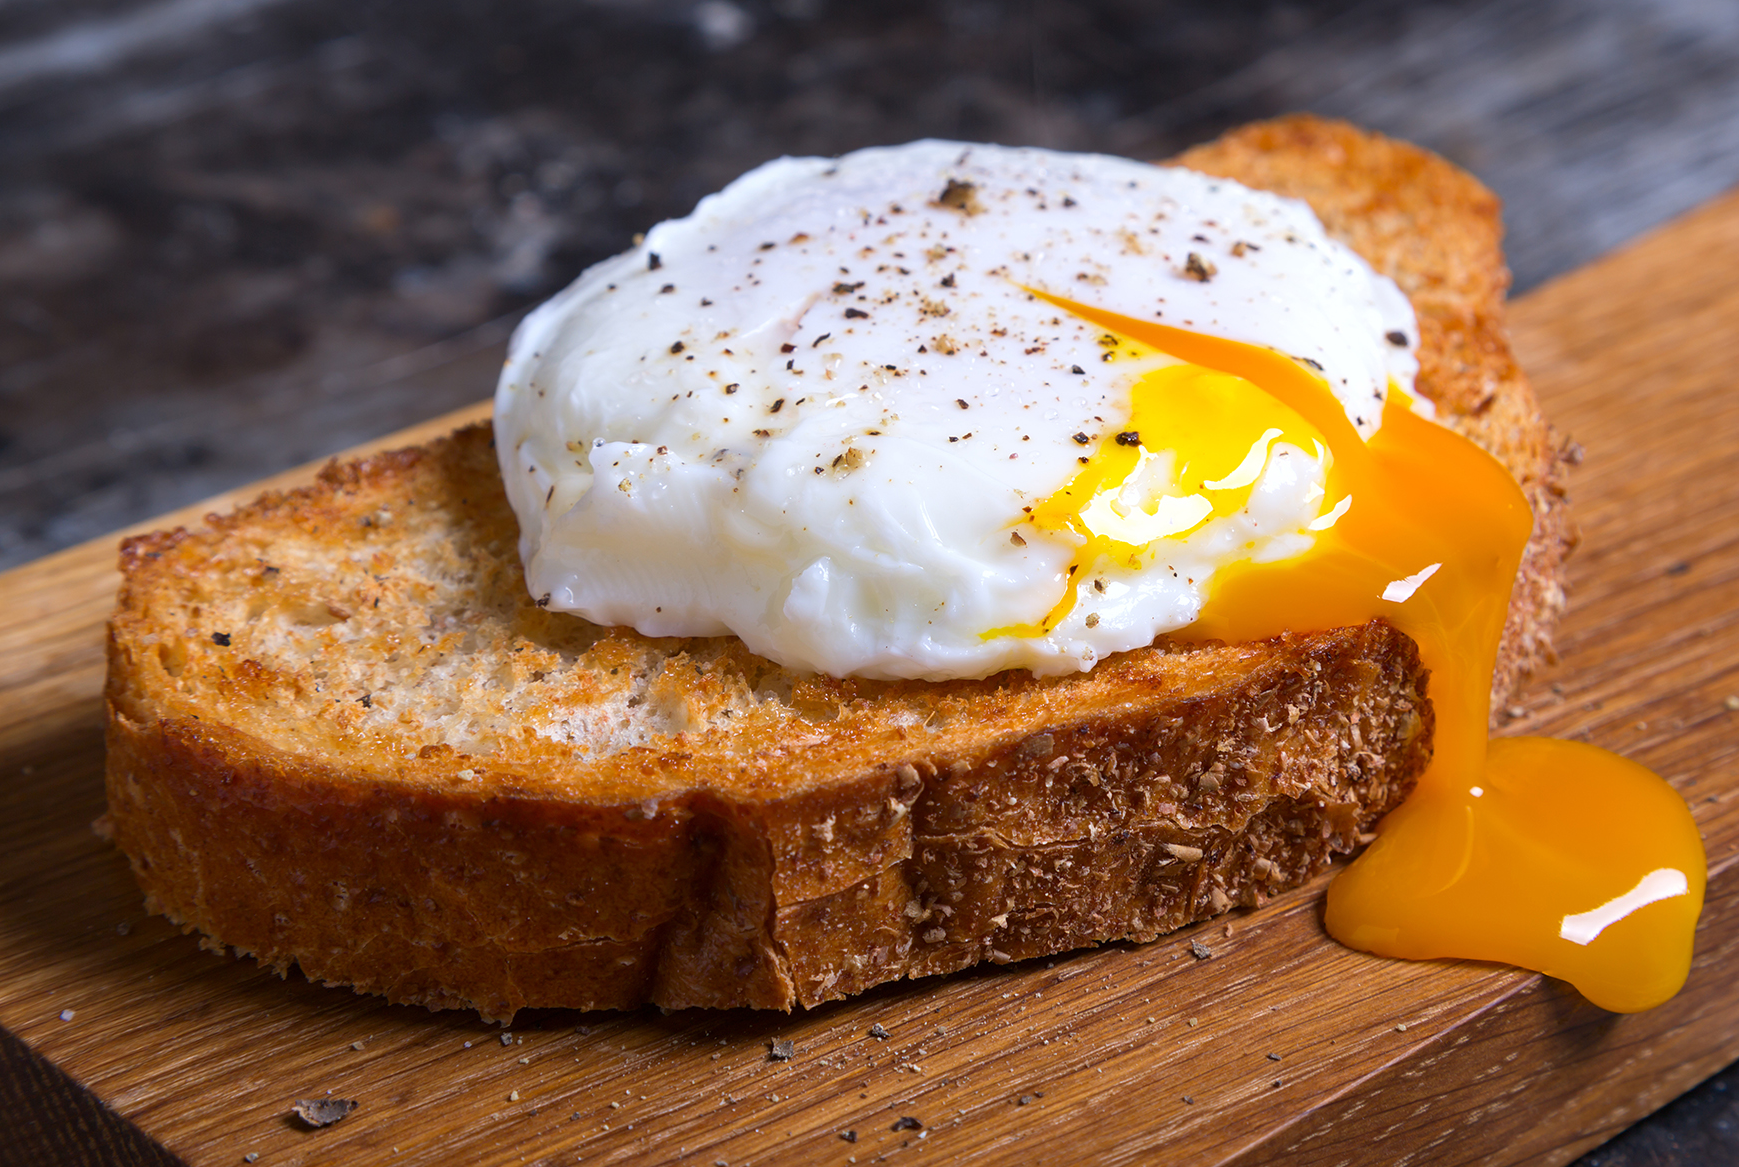 Bên cạnh lượng calo, trong trứng gà còn có chứa các chất dinh dưỡng